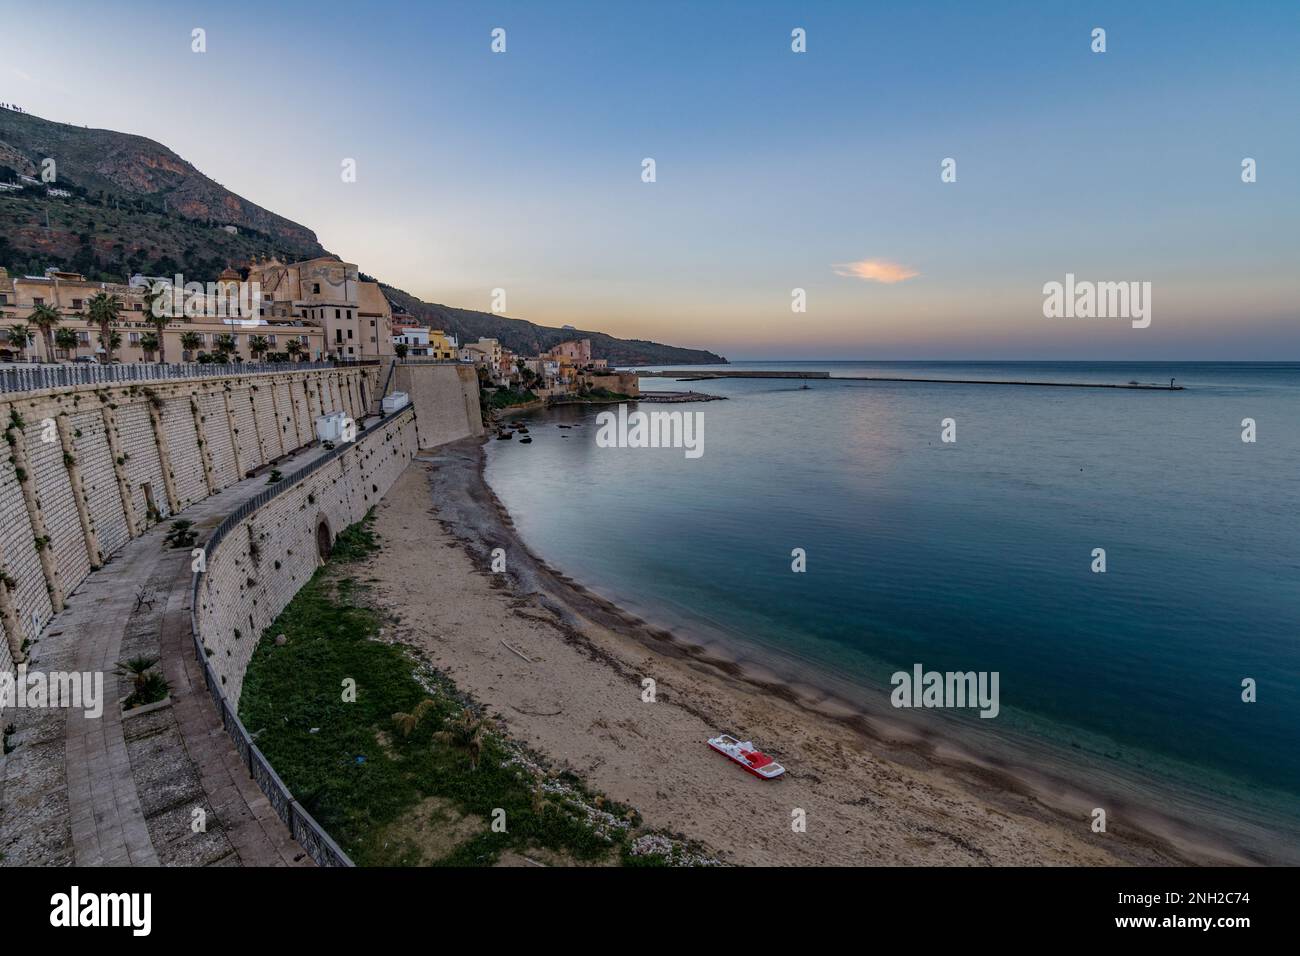 Castellammare del Golfo, Sicily Stock Photo - Alamy